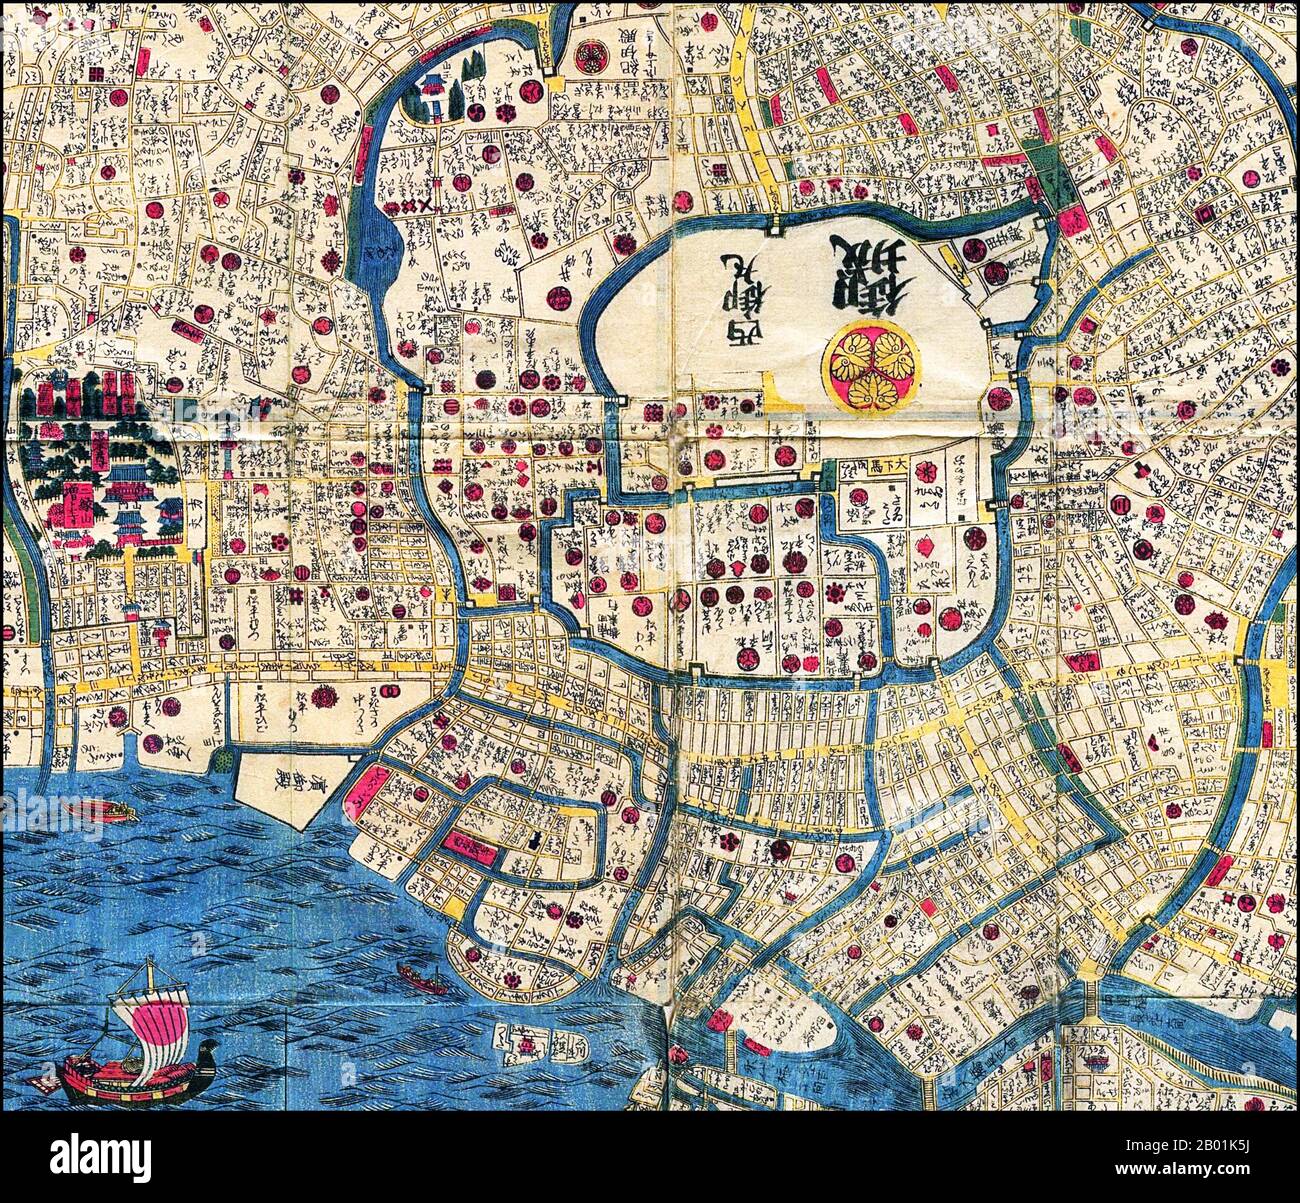 Giappone: Mappa di Edo (dettaglio del centro, la cima è dovuta a ovest), c. 1840. Edo (江戸, letteralmente "ingresso della baia" o "estuario"), anche romanzato come Yedo o Yeddo, è l'ex nome della capitale giapponese Tokyo, ed è stata la sede del potere dello shogunato Tokugawa che governò il Giappone dal 1603 al 1868. Durante questo periodo è cresciuta fino a diventare una delle città più grandi del mondo e sede di una vibrante cultura urbana incentrata sulle nozioni di "mondo galleggiante". Foto Stock